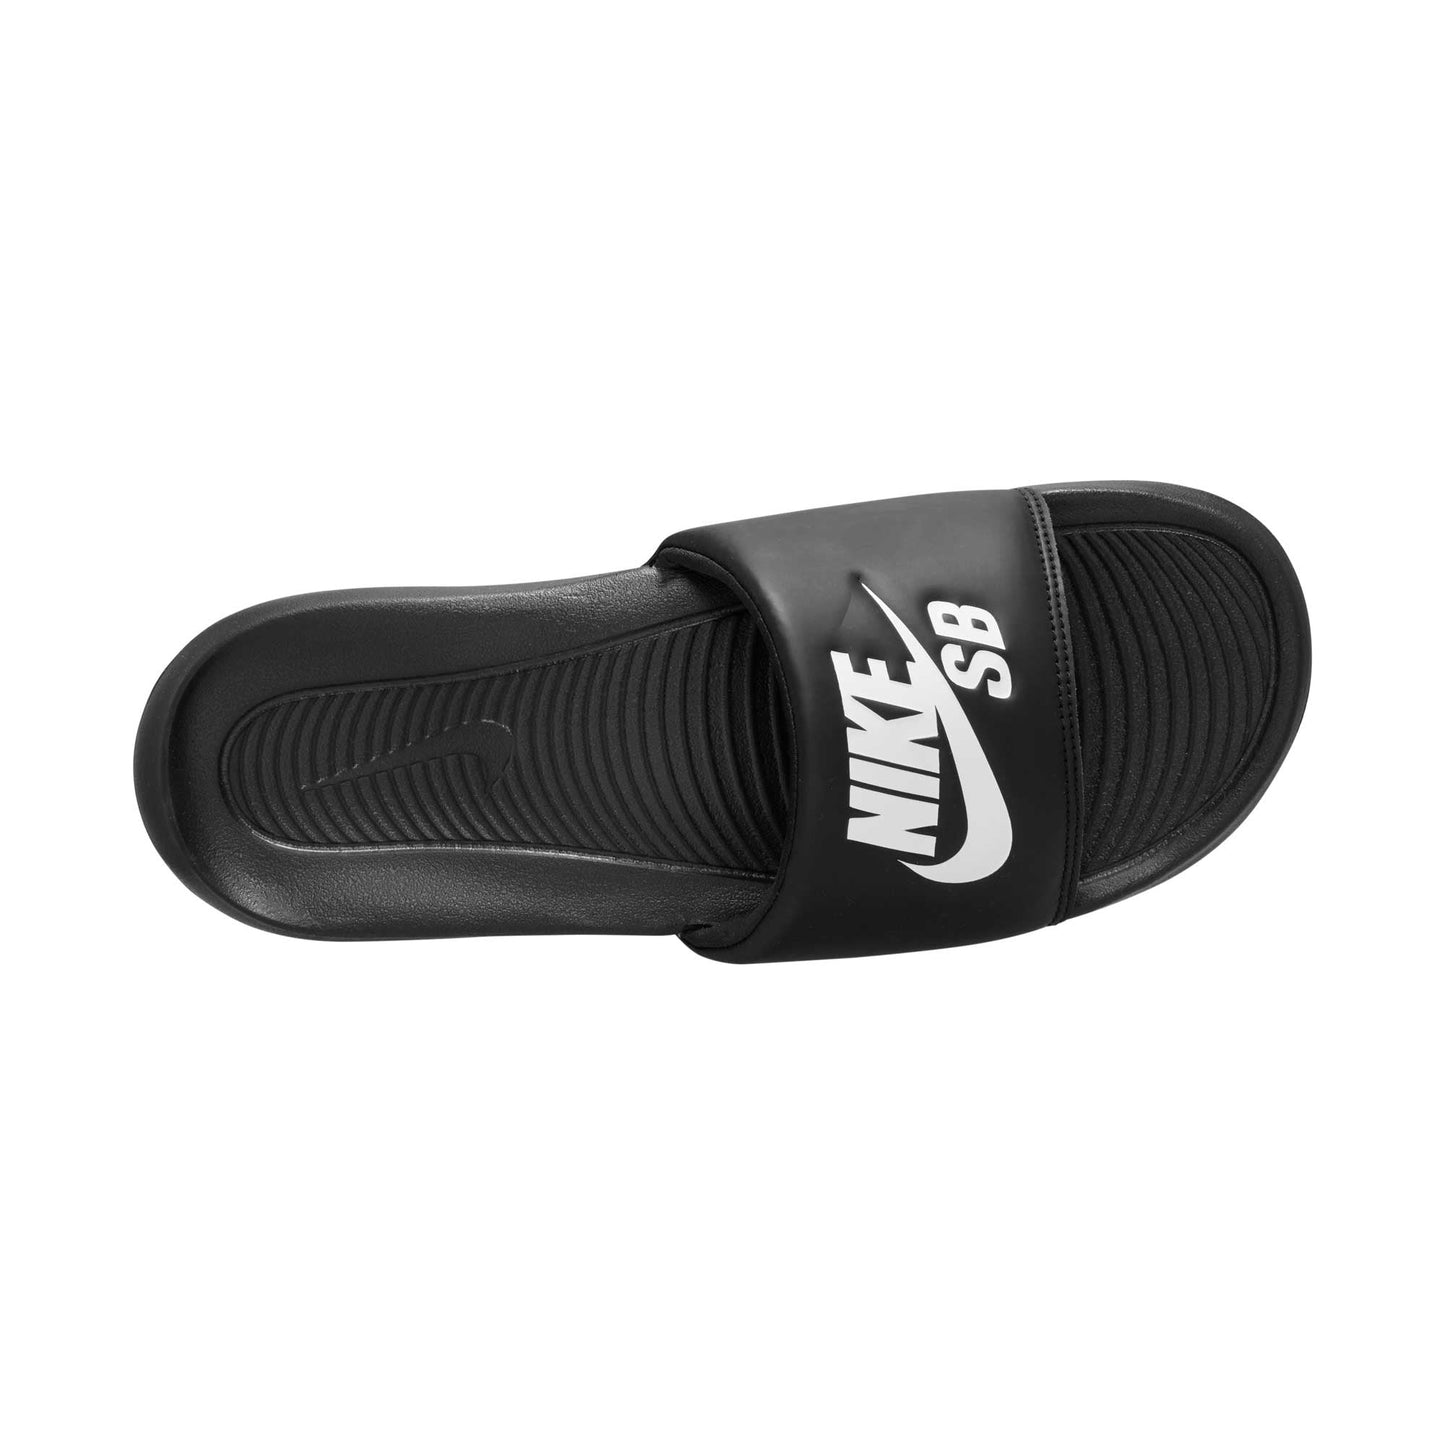 Nike SB Victori One, black/white-black - Tiki Room Skateboards - 8